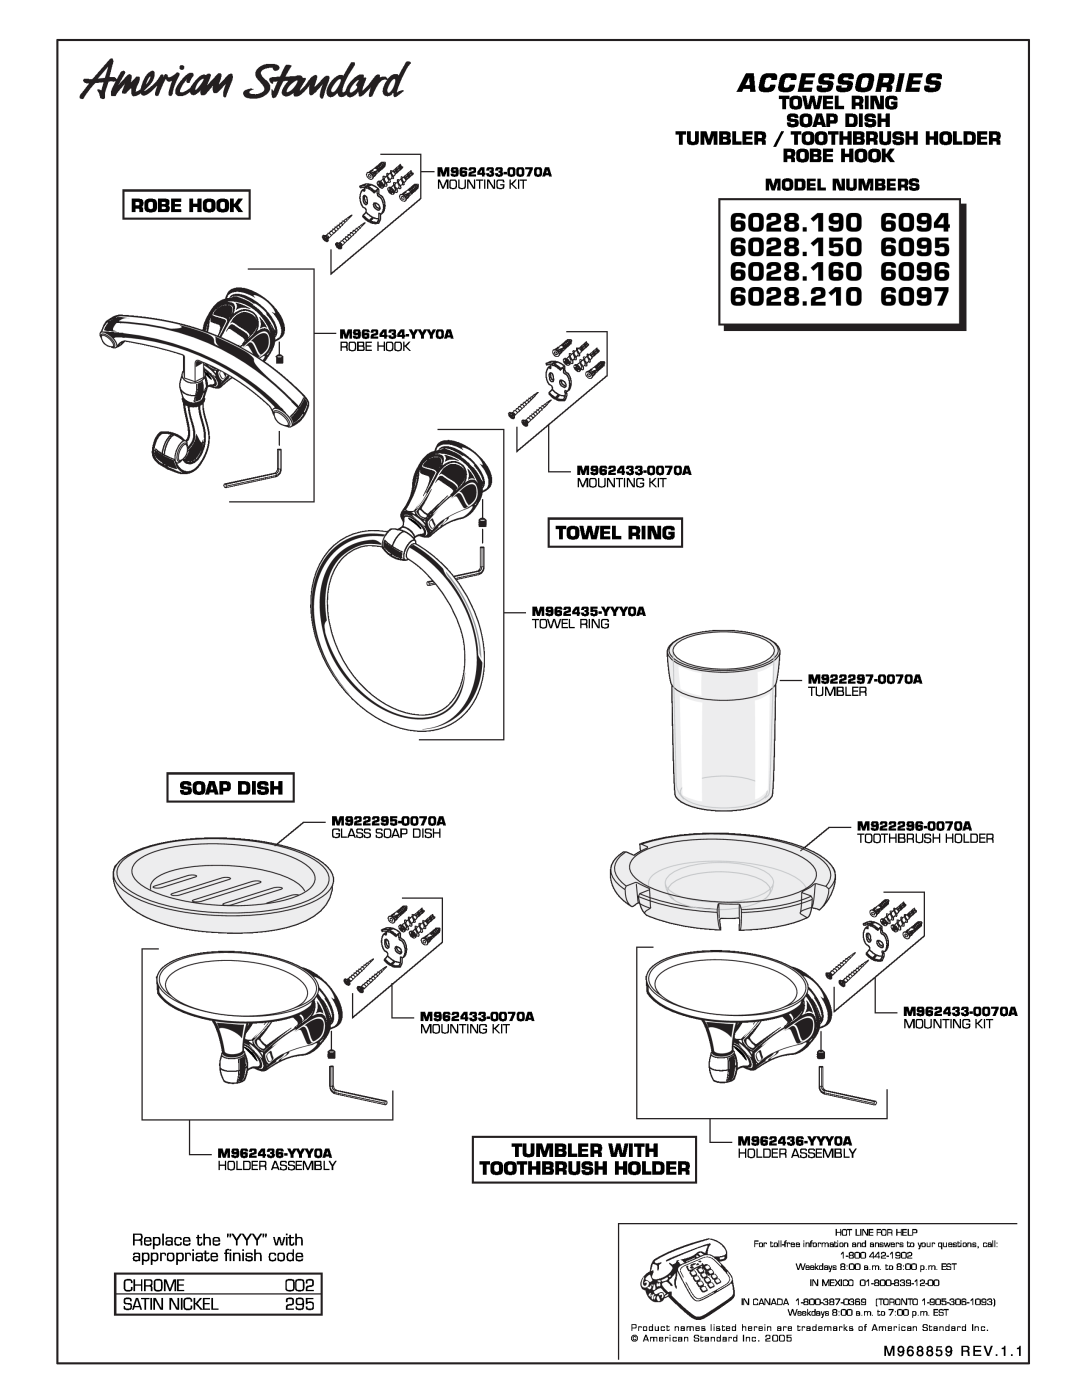 American Standard 6096 manual Accessories, 6028.190, 6094, 6028.150, 6095, 6028.160, 6028.210, 6097, Robe Hook, Towel Ring 